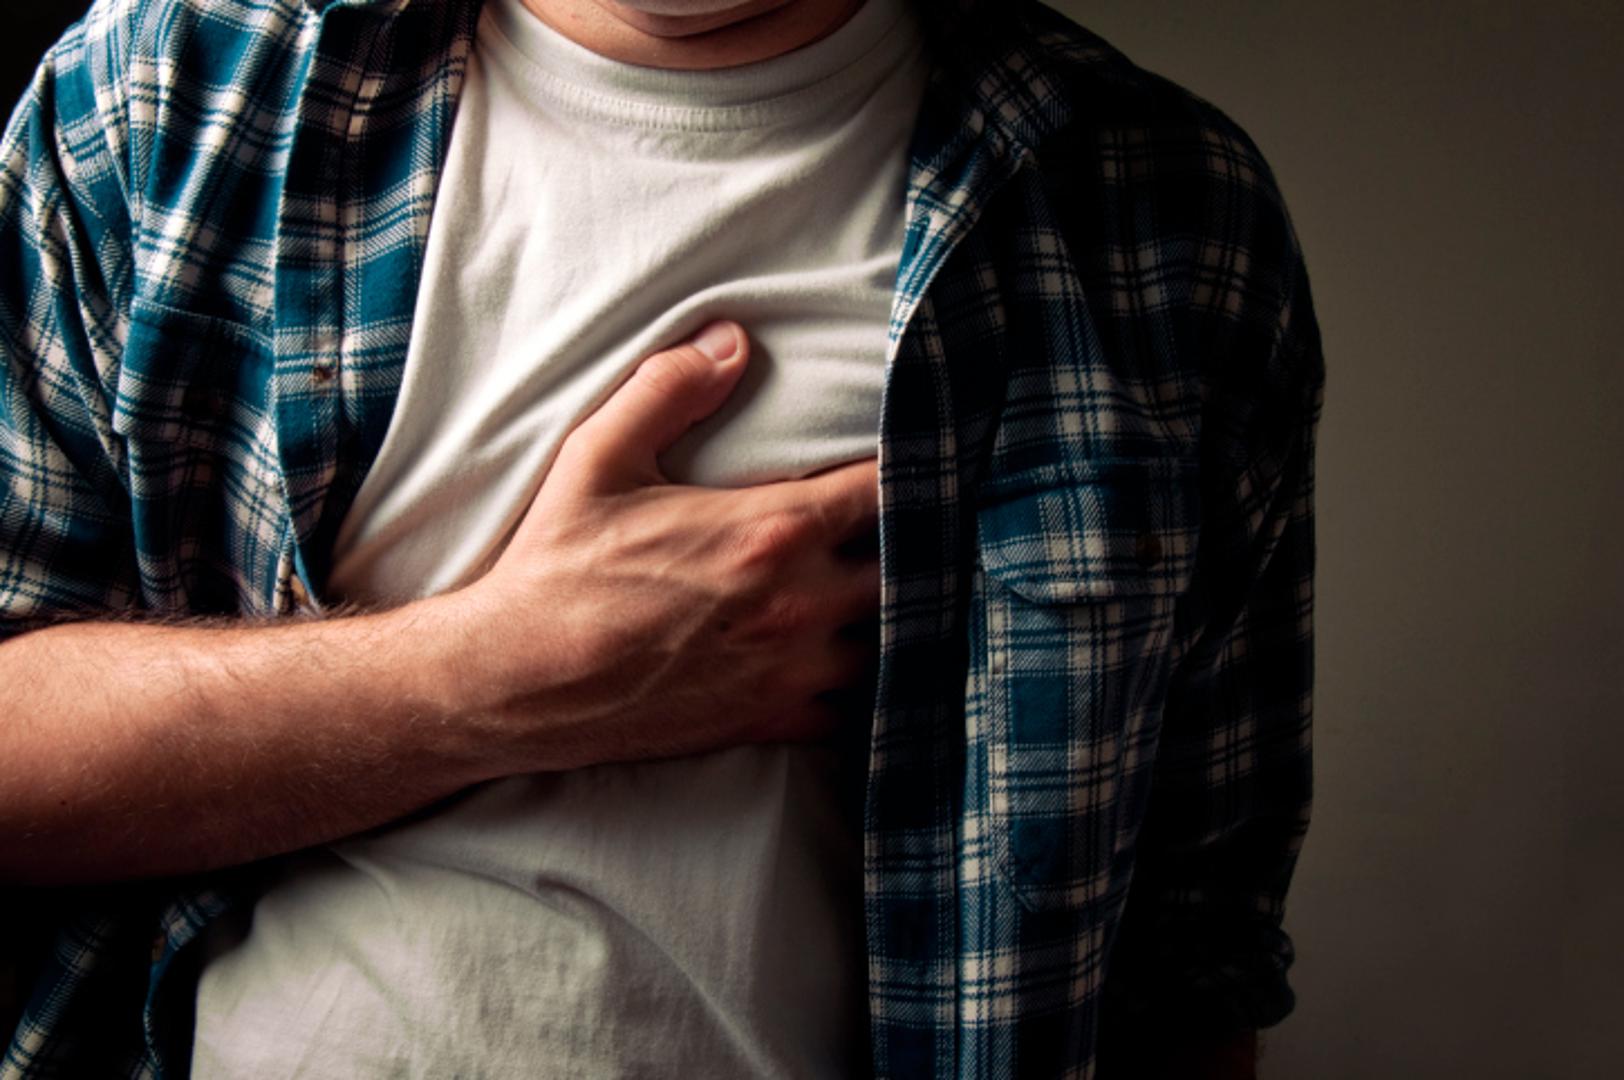 Kardiolog iz bolnice Columbia Asia Anil Bansal upozorava da svi moramo znati prepoznati znakove infarkta koje nam tijelo ponekad daje unaprijed. Neki od mogućih znakova upozorenja često se zanemaruju. 